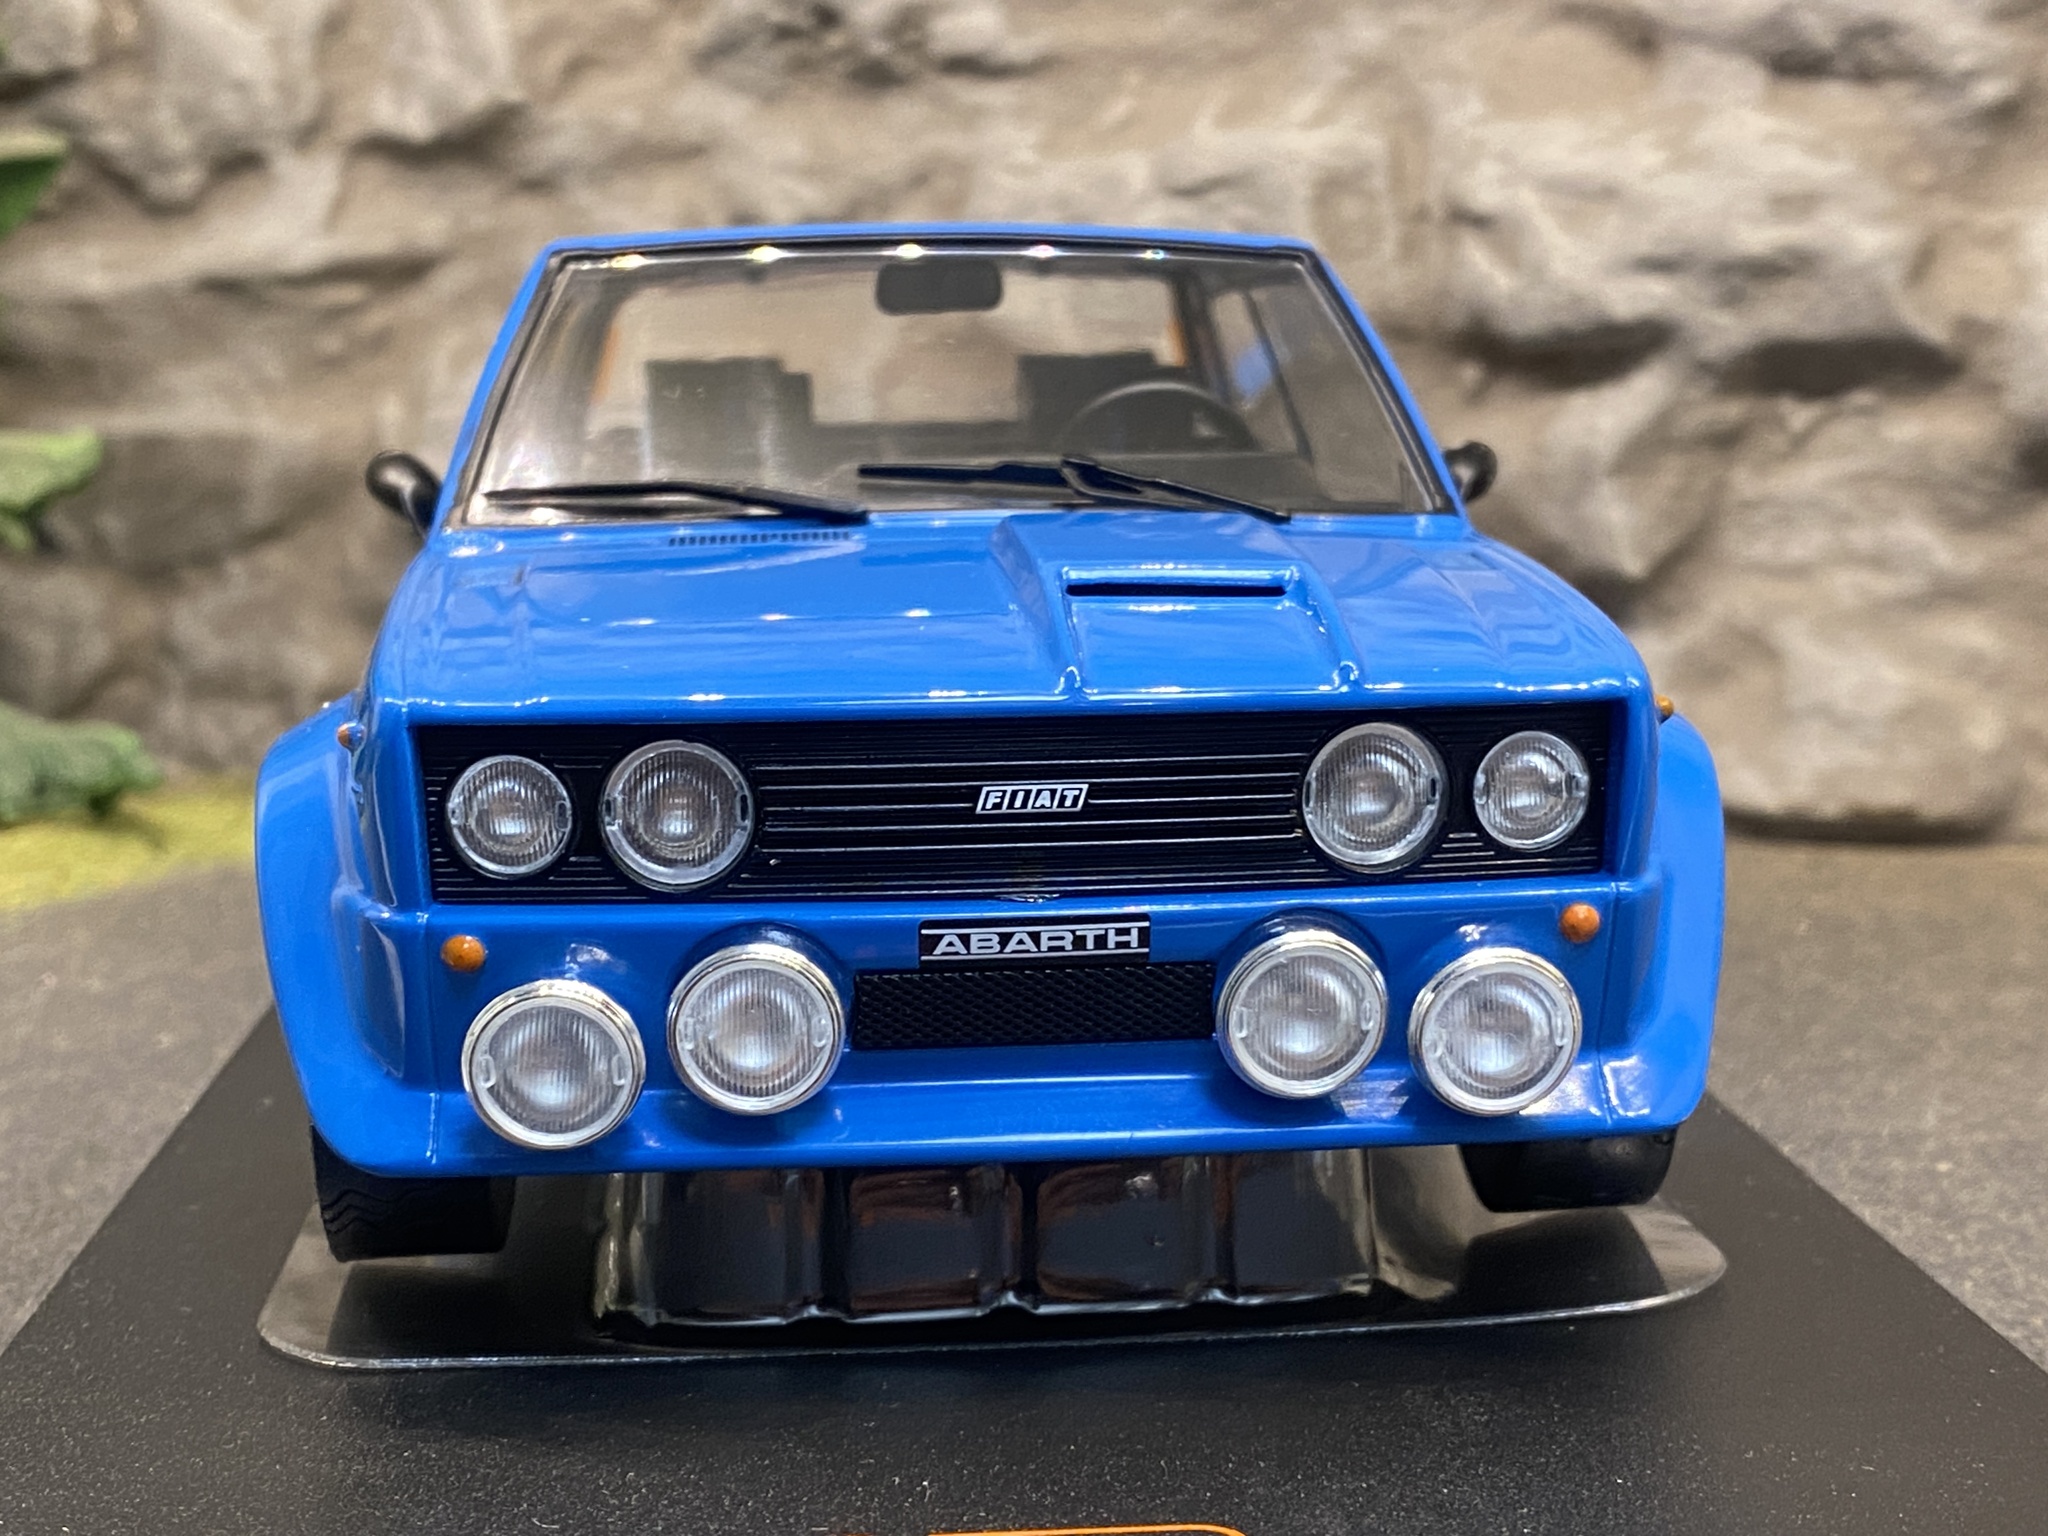 Skala 1/18 FIAT 131 Abarth 1980', Blå från IXO Models